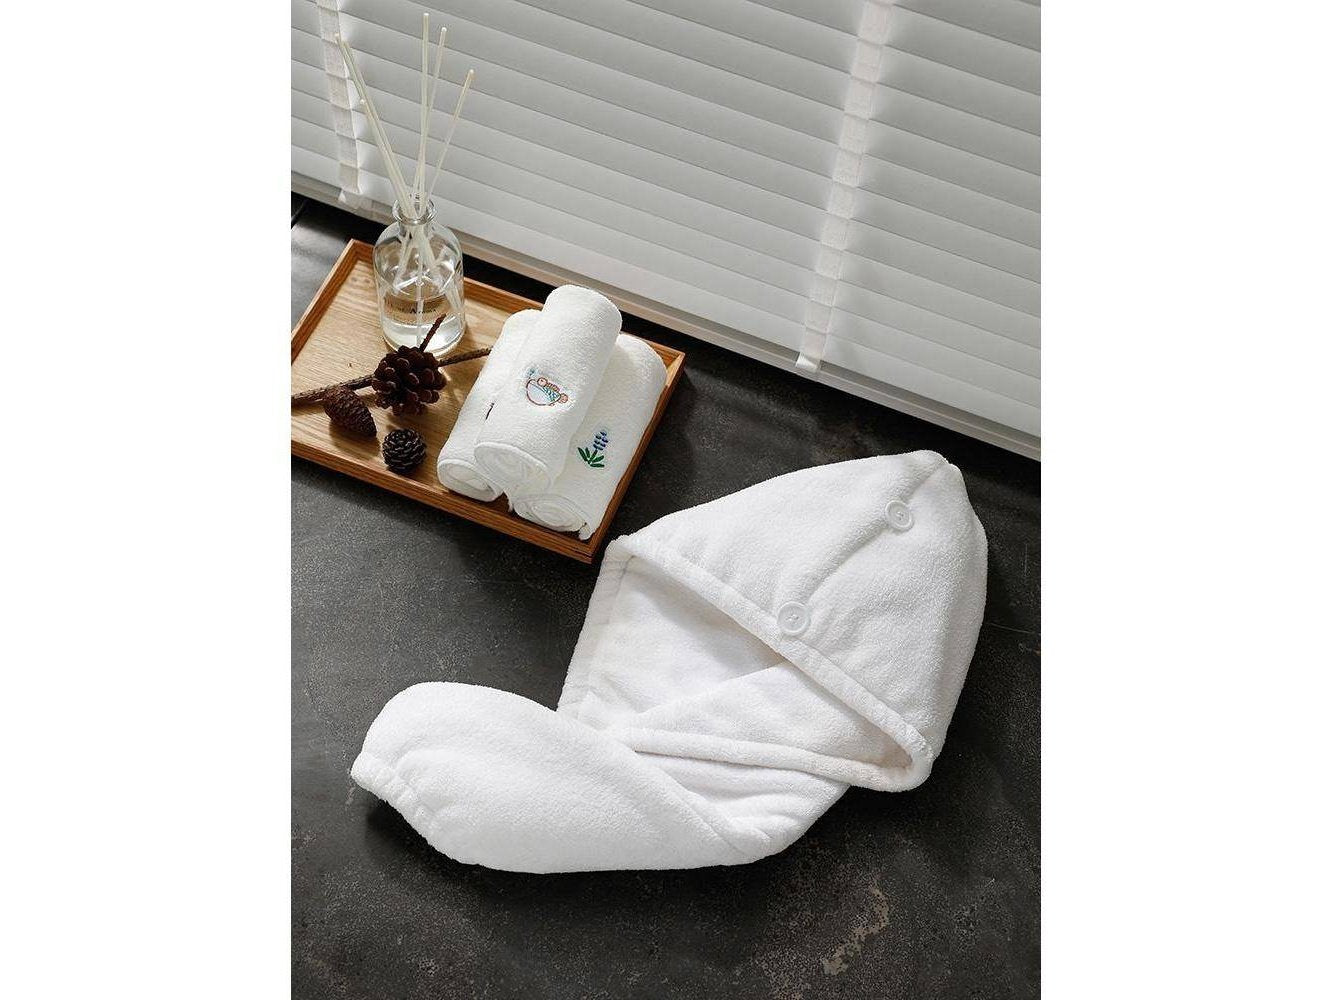 Shimoyama Hair Towel Wrap Turban